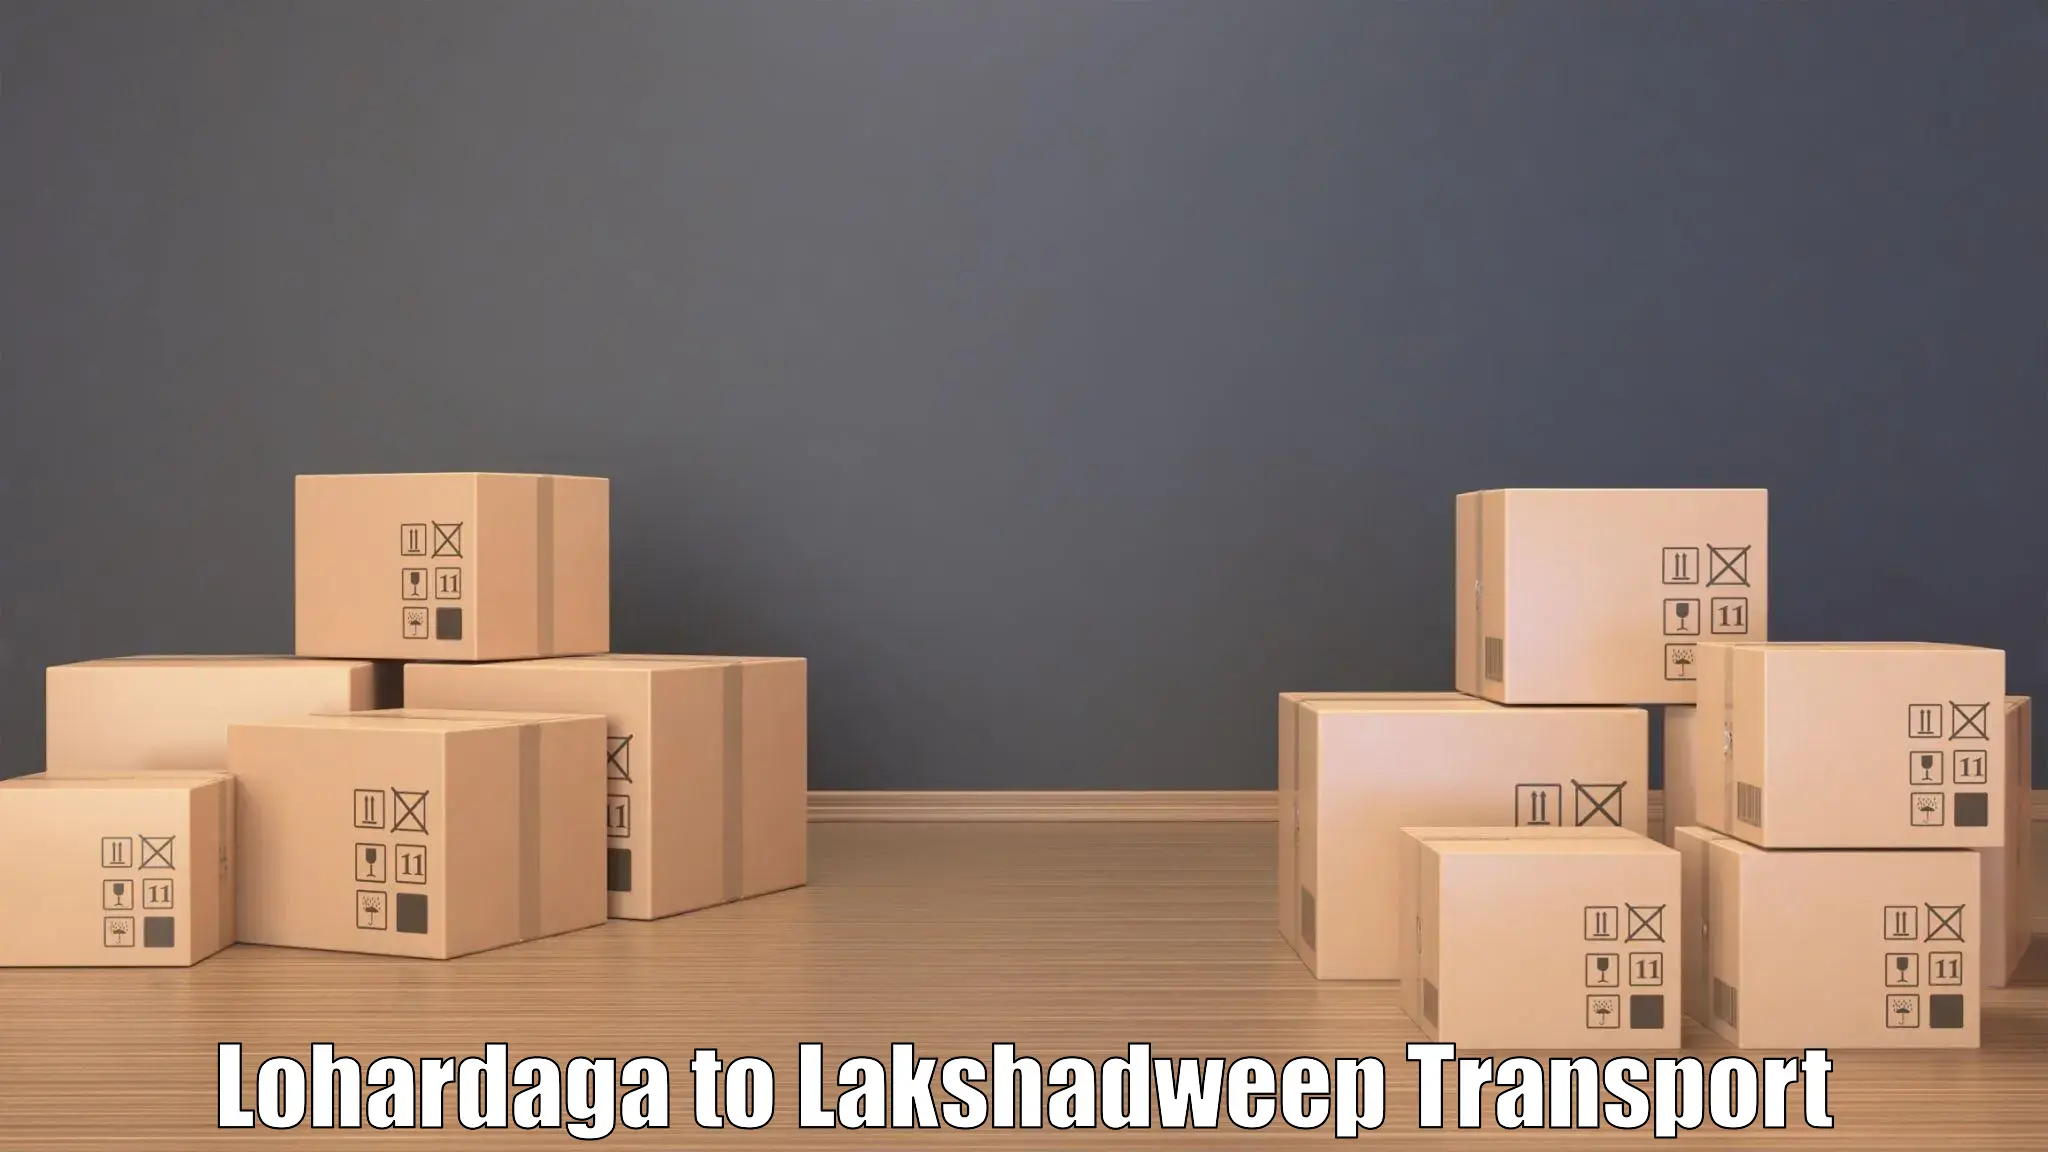 Transport in sharing Lohardaga to Lakshadweep